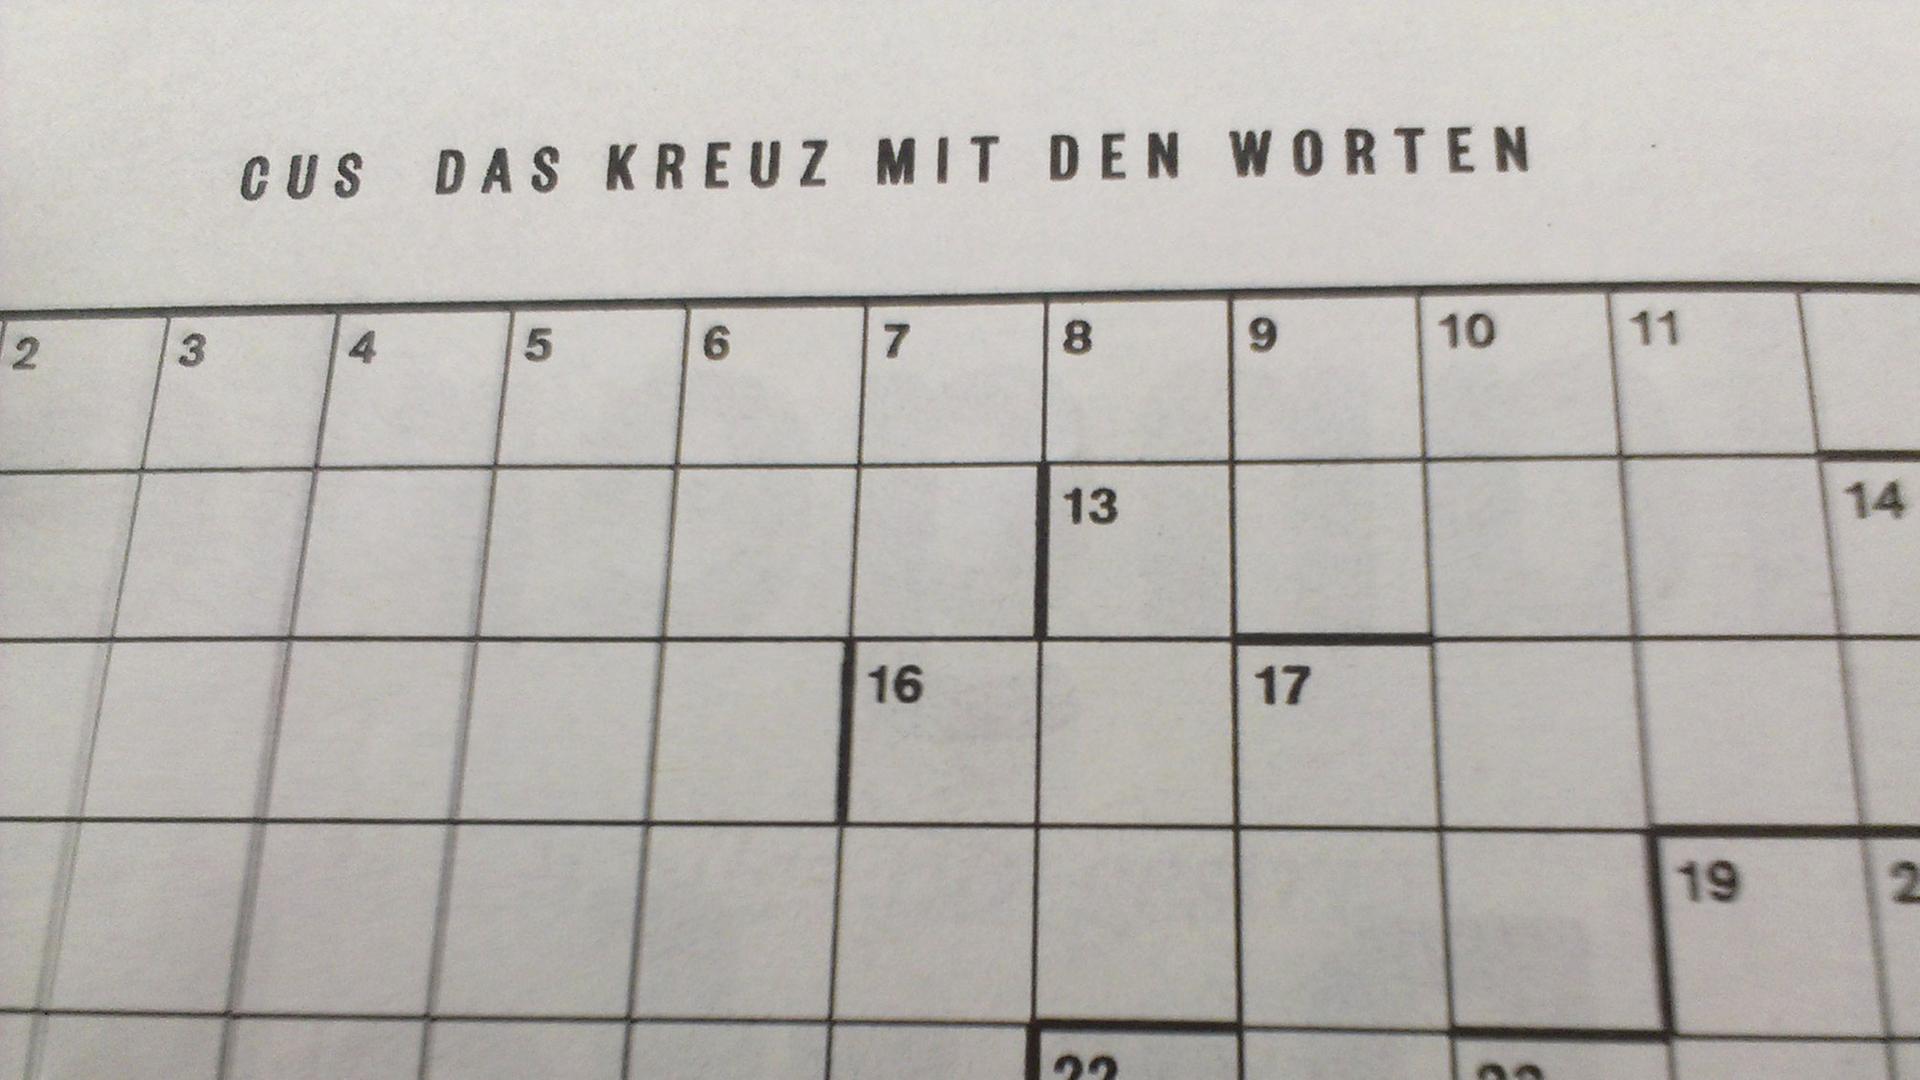 Ein Cus-Kreuzworträtsel im Magazin der "Süddeutschen Zeitung"